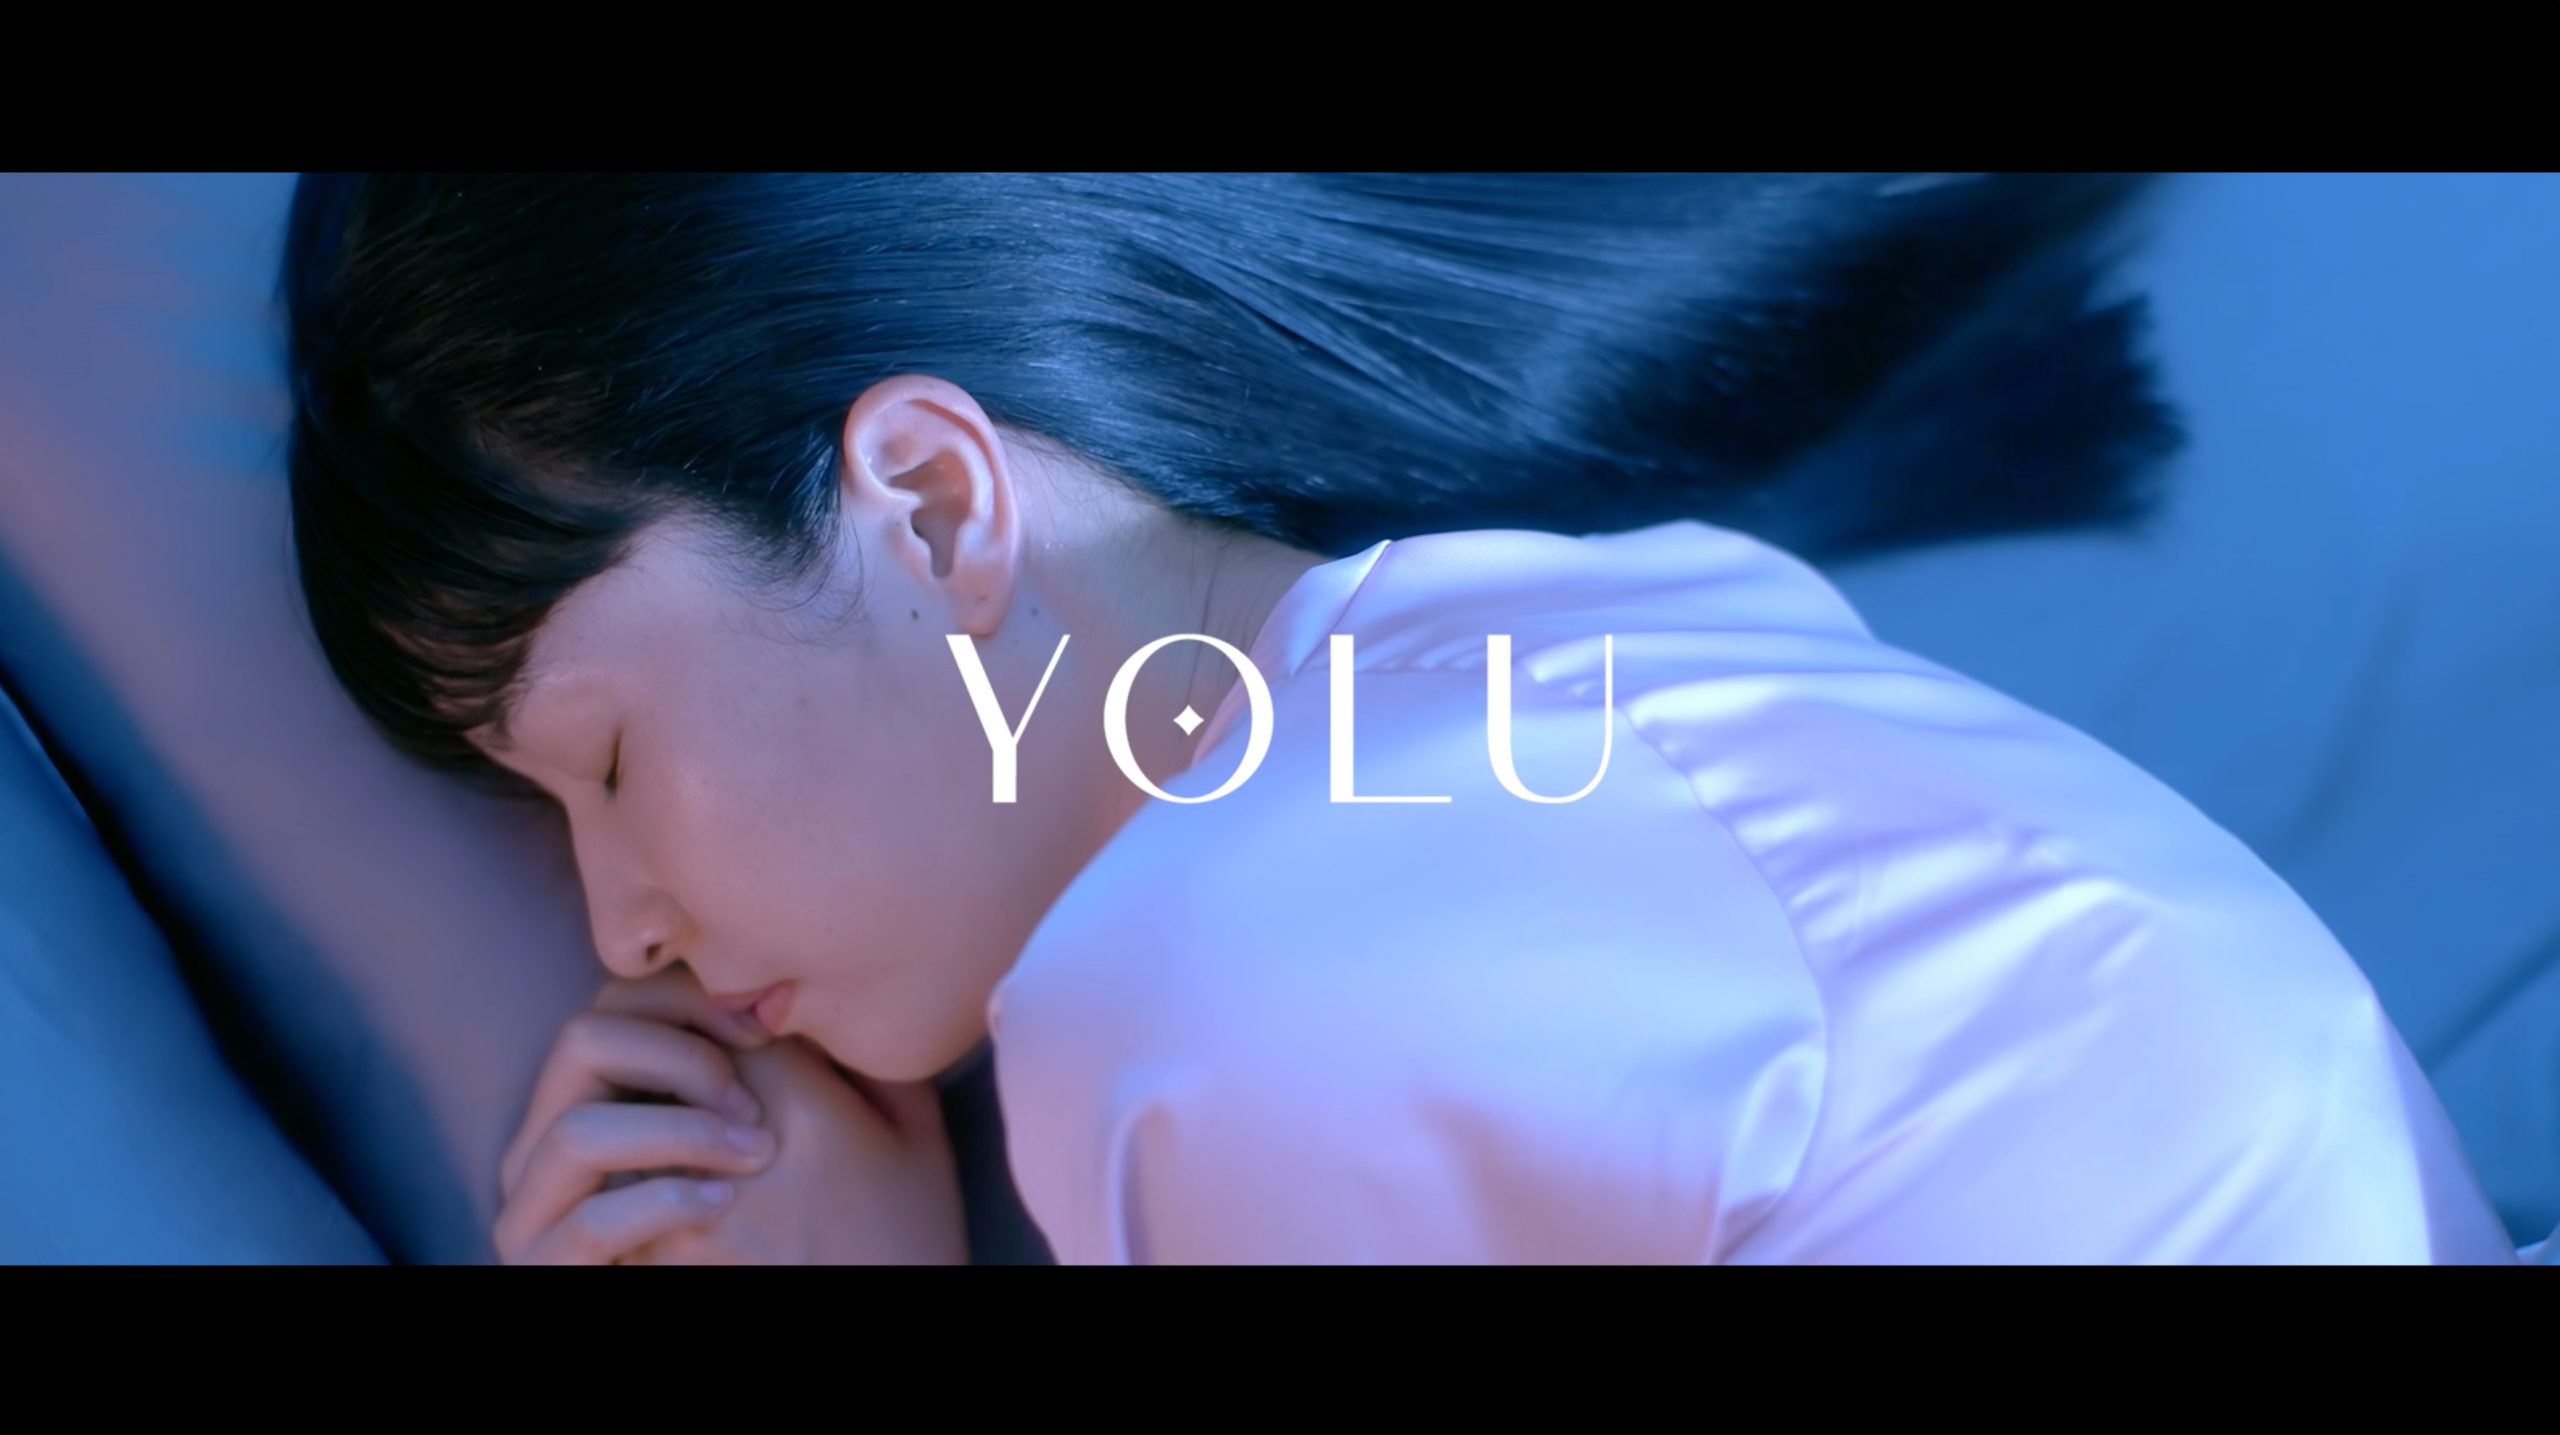 “ナイトキャップ発想”の新ヘアケアブランド「ヨル(YOLU)」